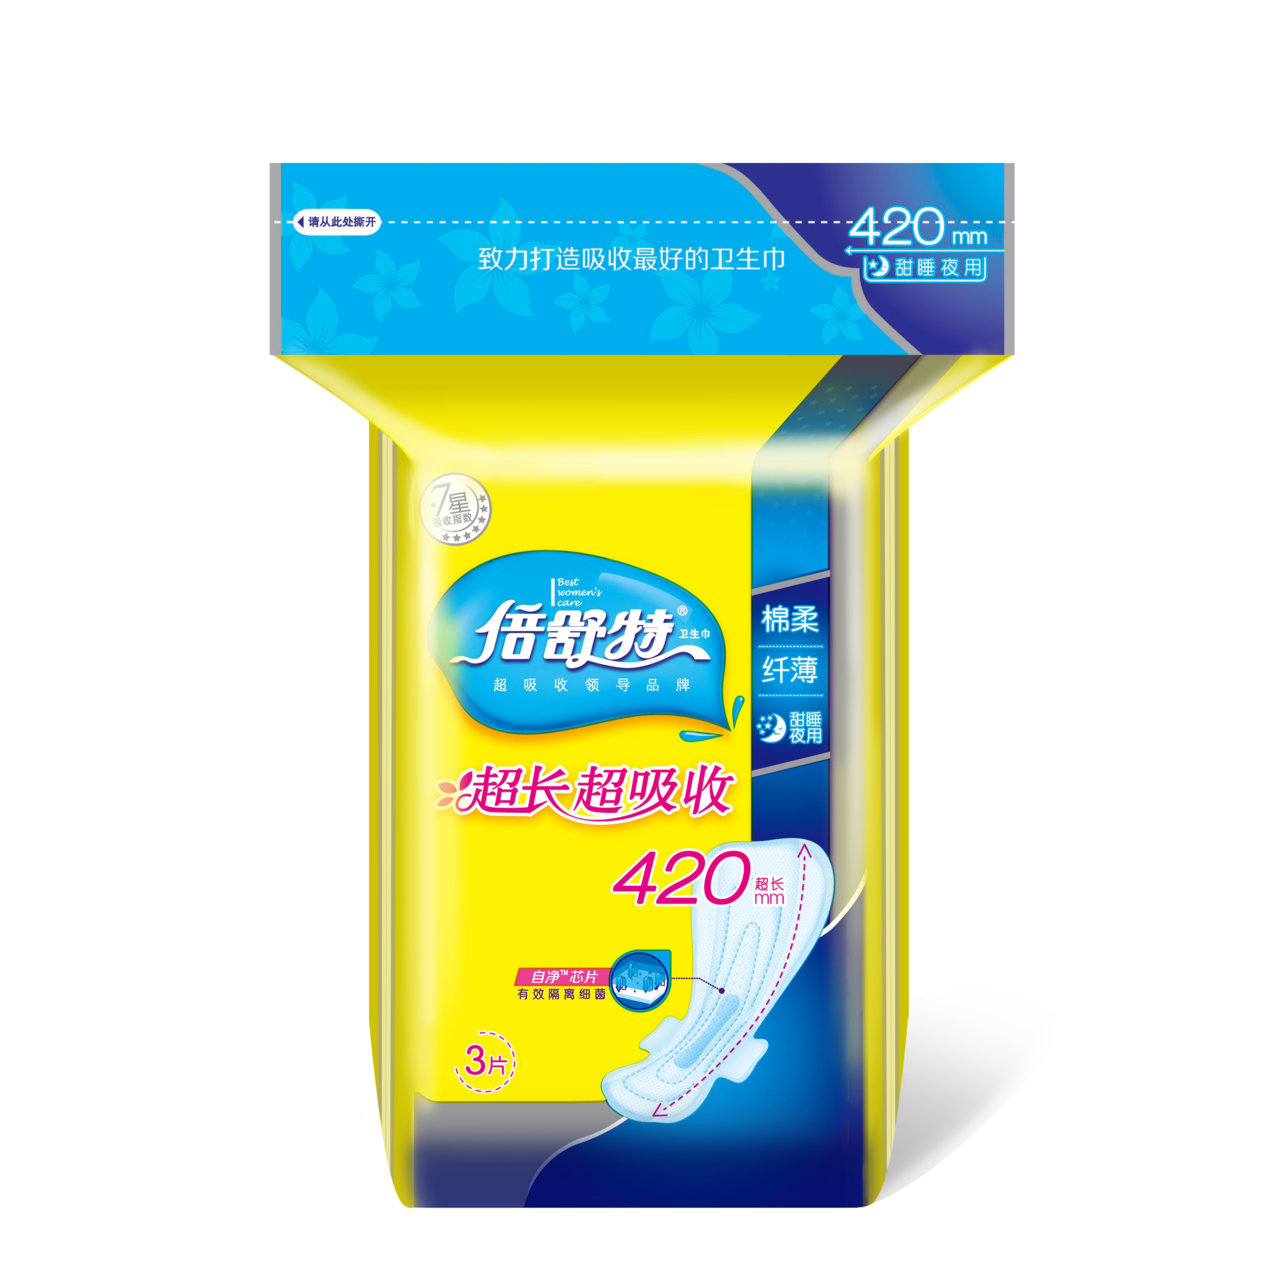 【新品上新】倍舒特医护级卫生巾超瞬吸日用240mm10包透气